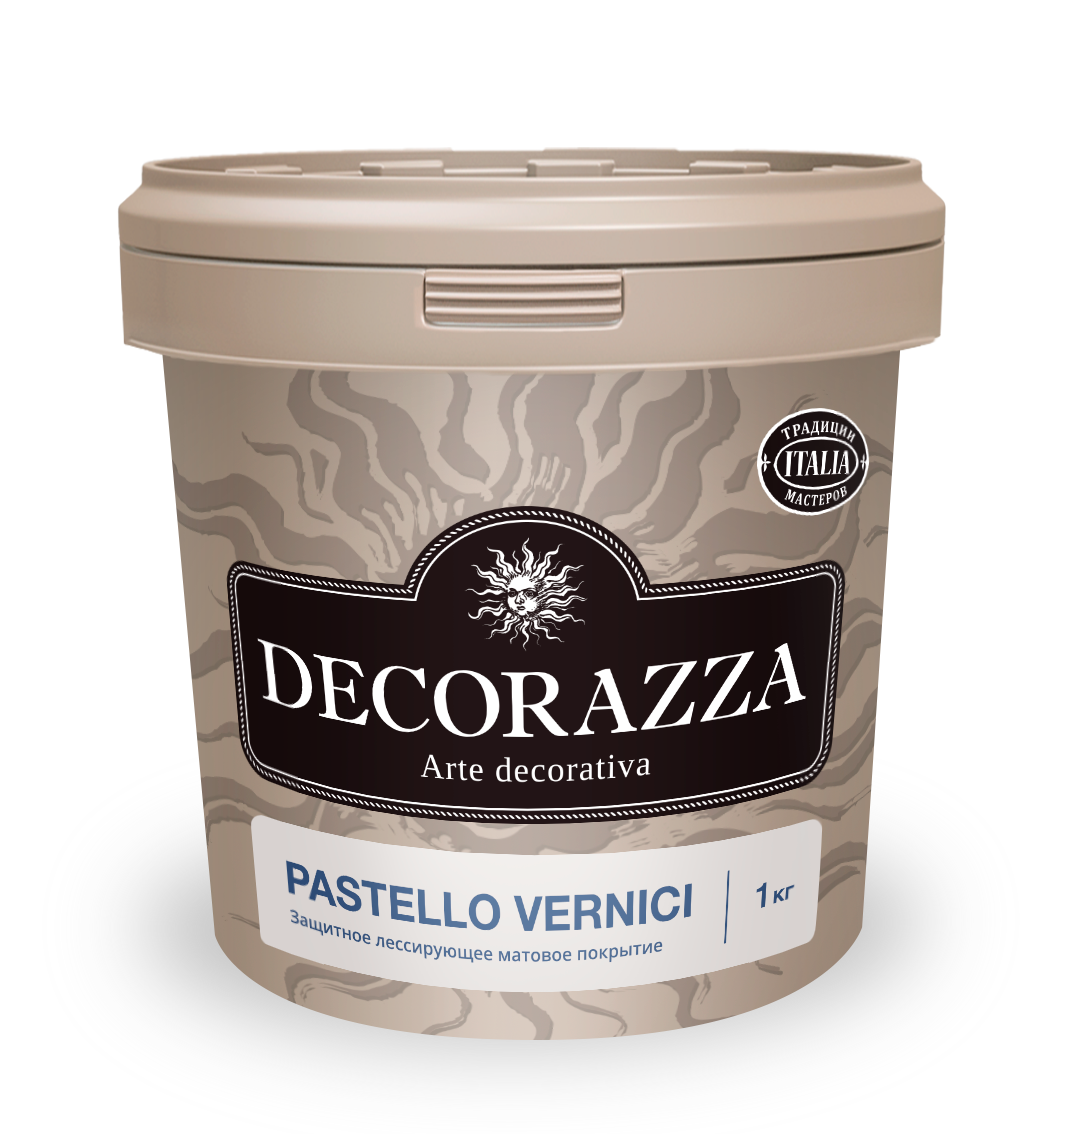 Декоративный финишный лак Decorazza Pastello Vernici PV 001, 1 кг декоративный финишный лак decorazza perla vernici pl 1341 золото 1 л